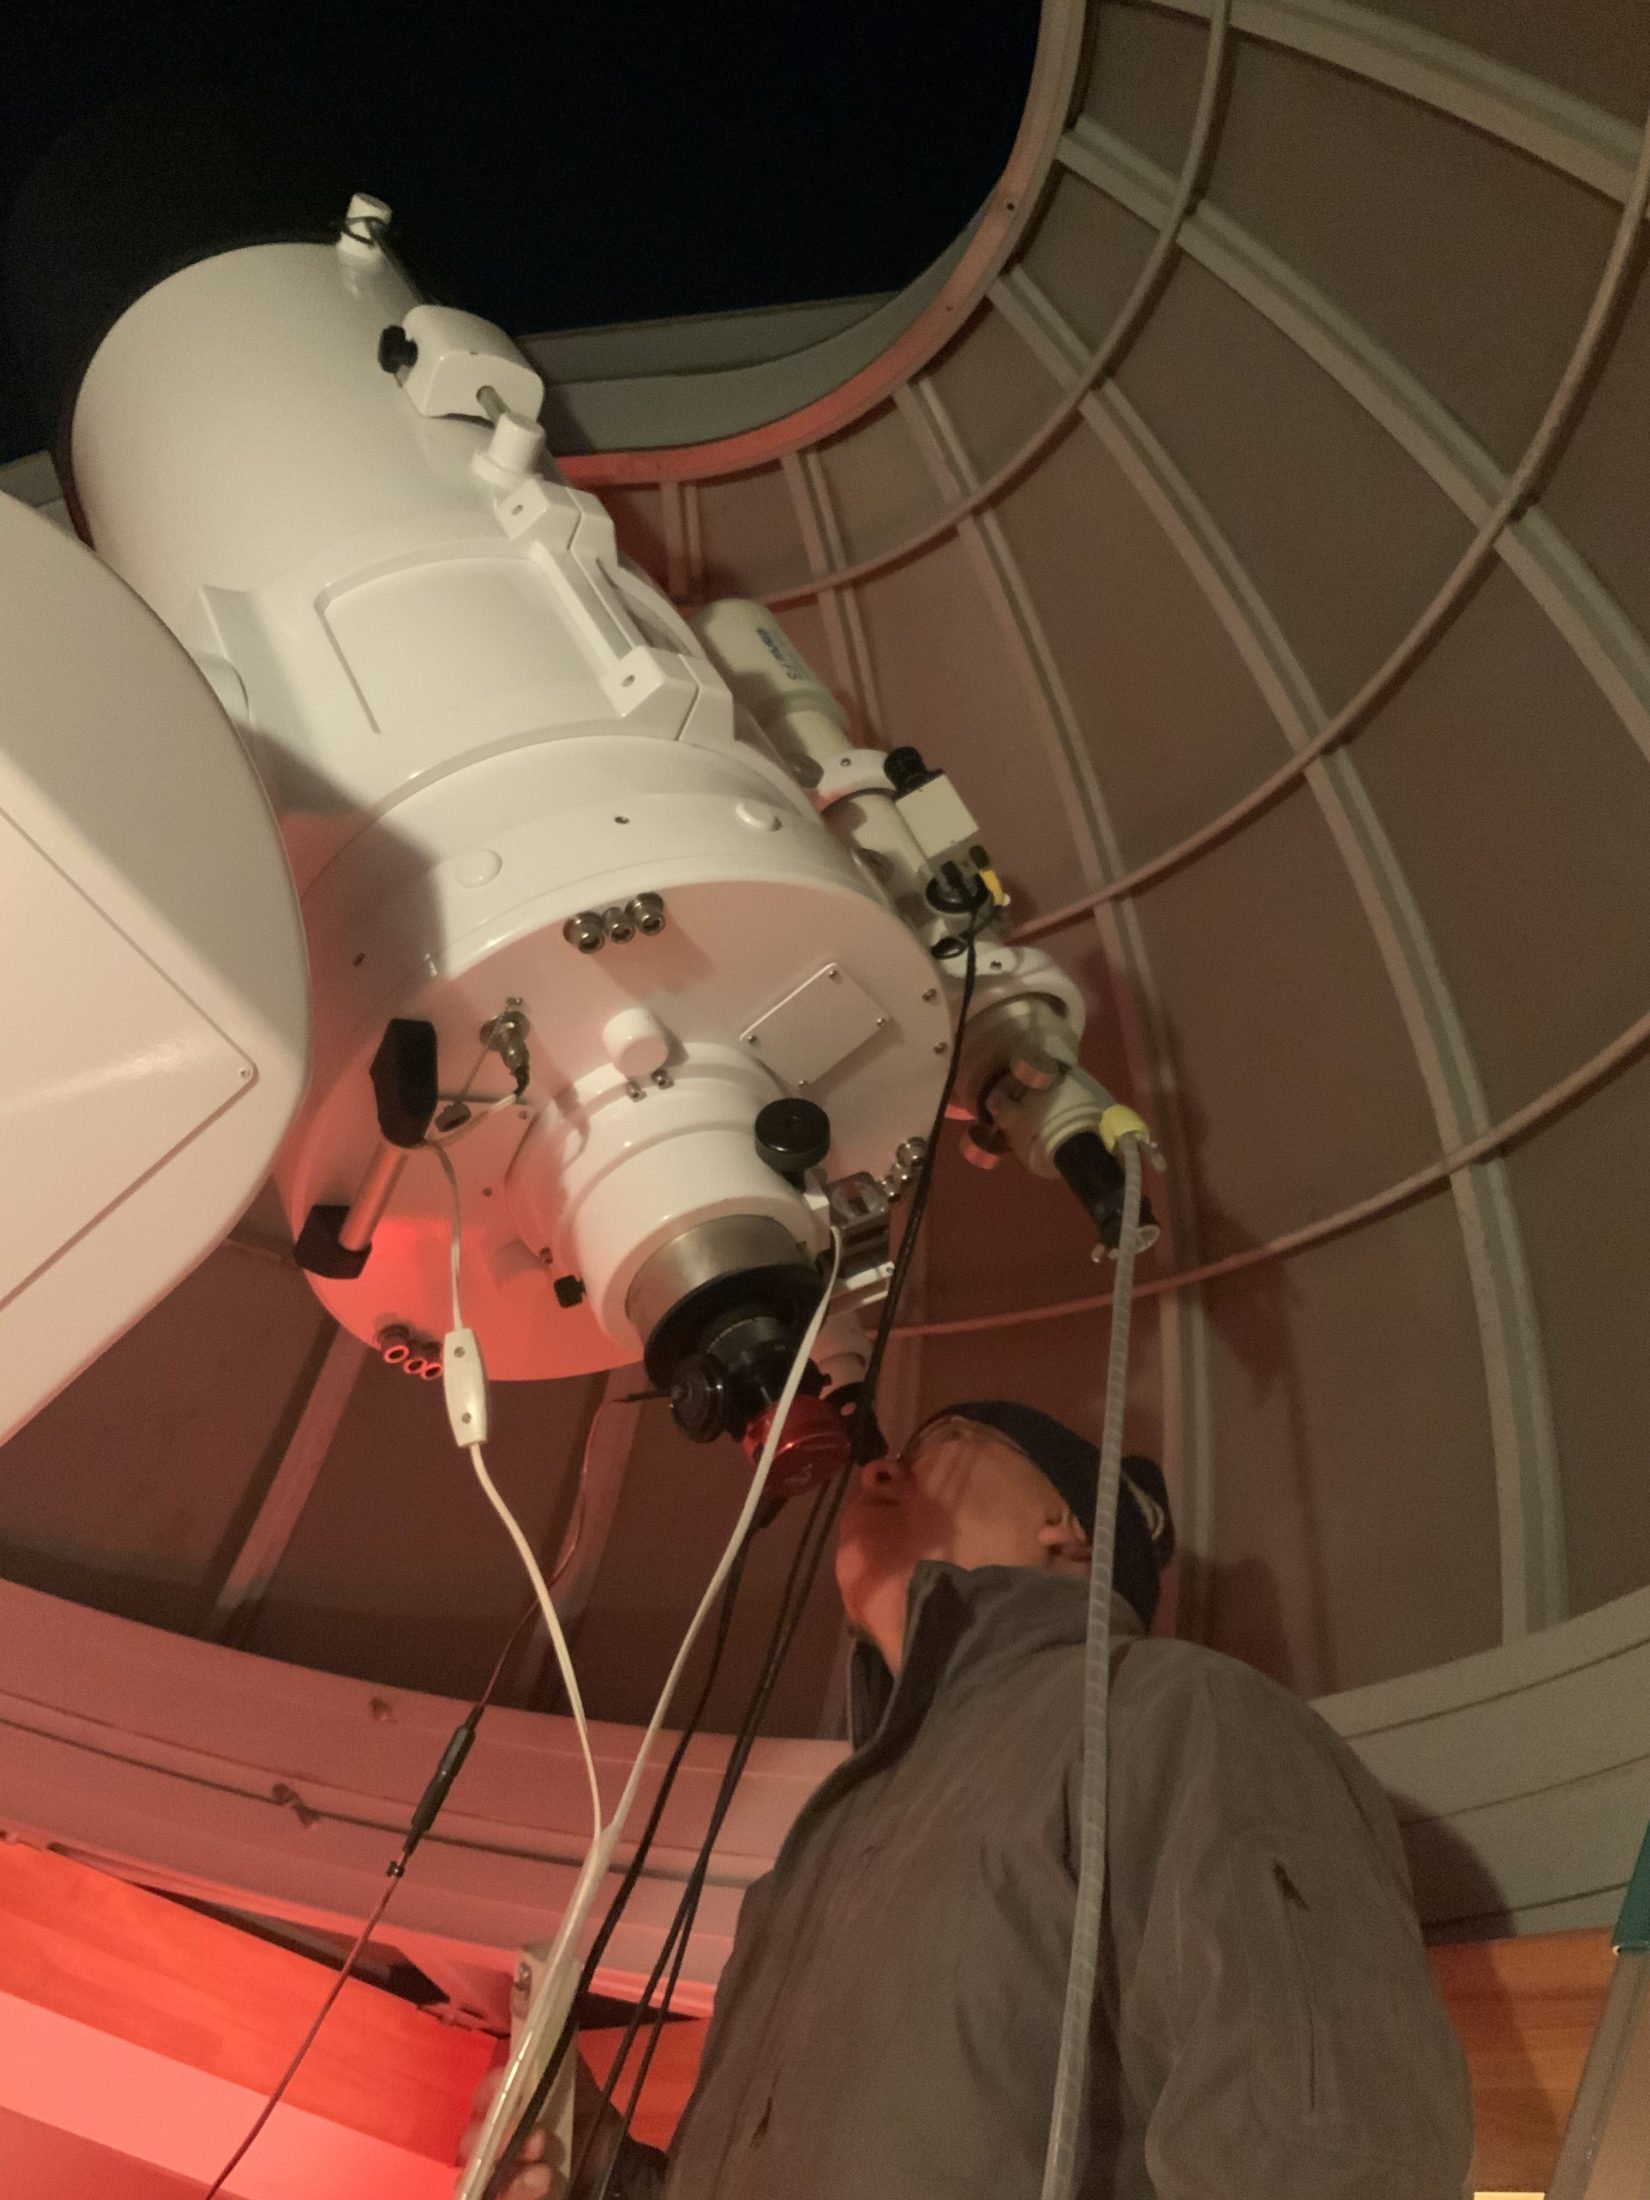 自宅屋上にある反射望遠鏡で観察中の北崎勝彦教諭（東洋英和女学院/社会科）。天文部の顧問としても指導している